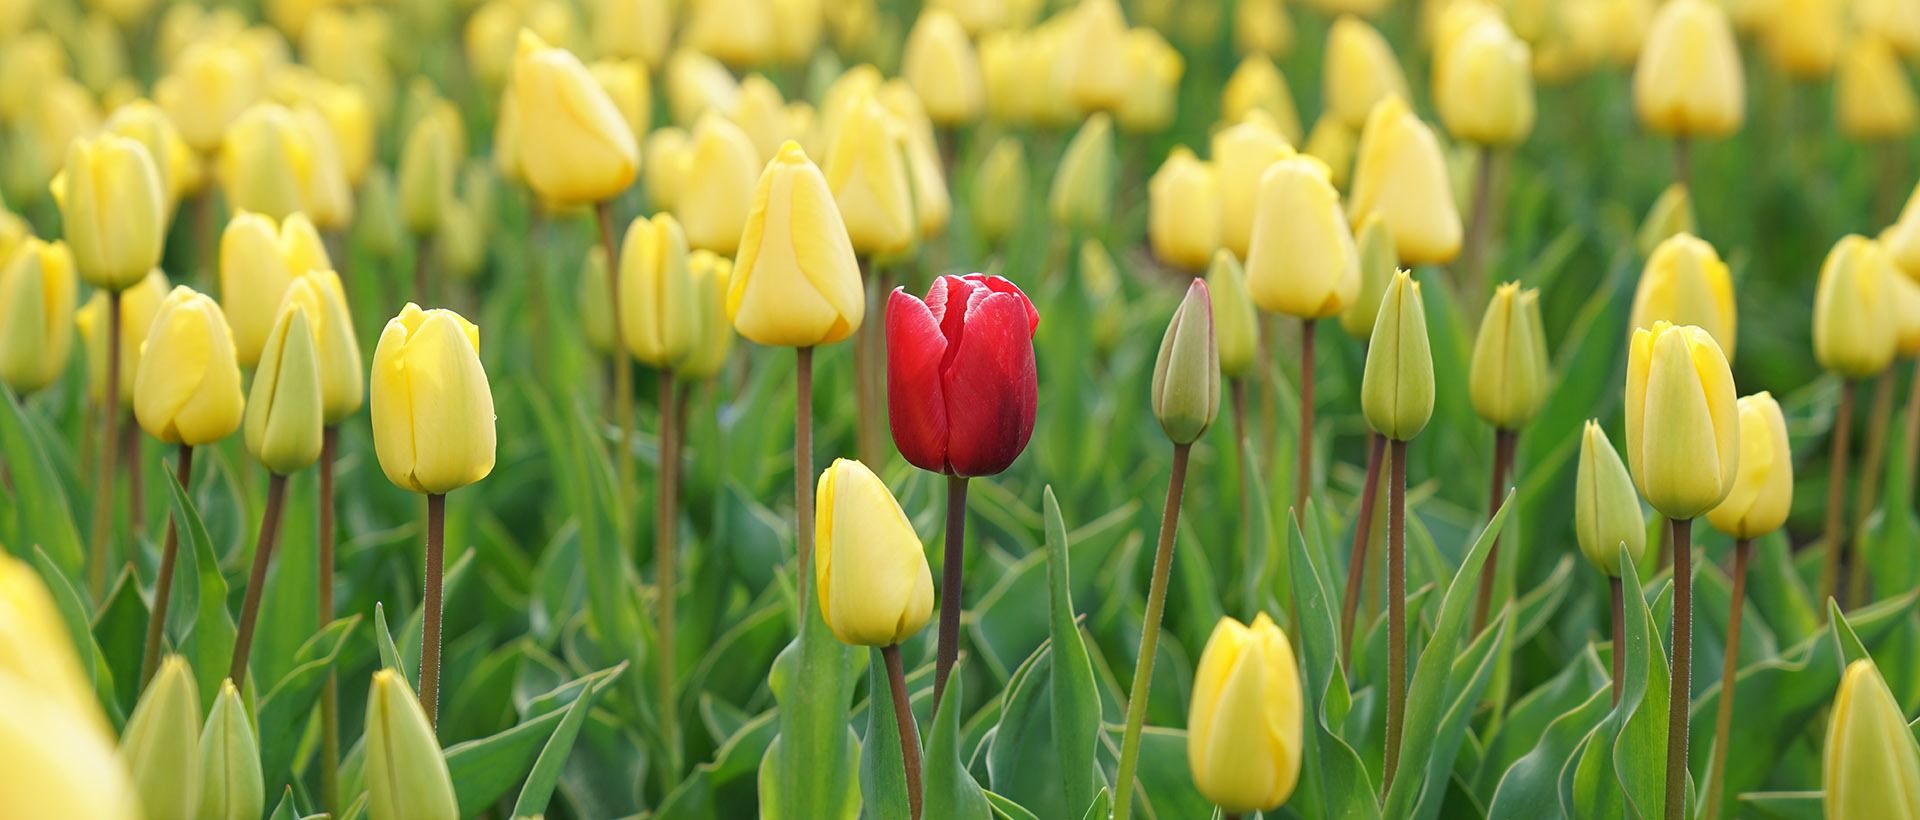 Eine rote Tulpe in einem Feld von gelben Tulpen sinnbildlich dafür, mit gutem Content Marketing aus der Masse herauszustechen